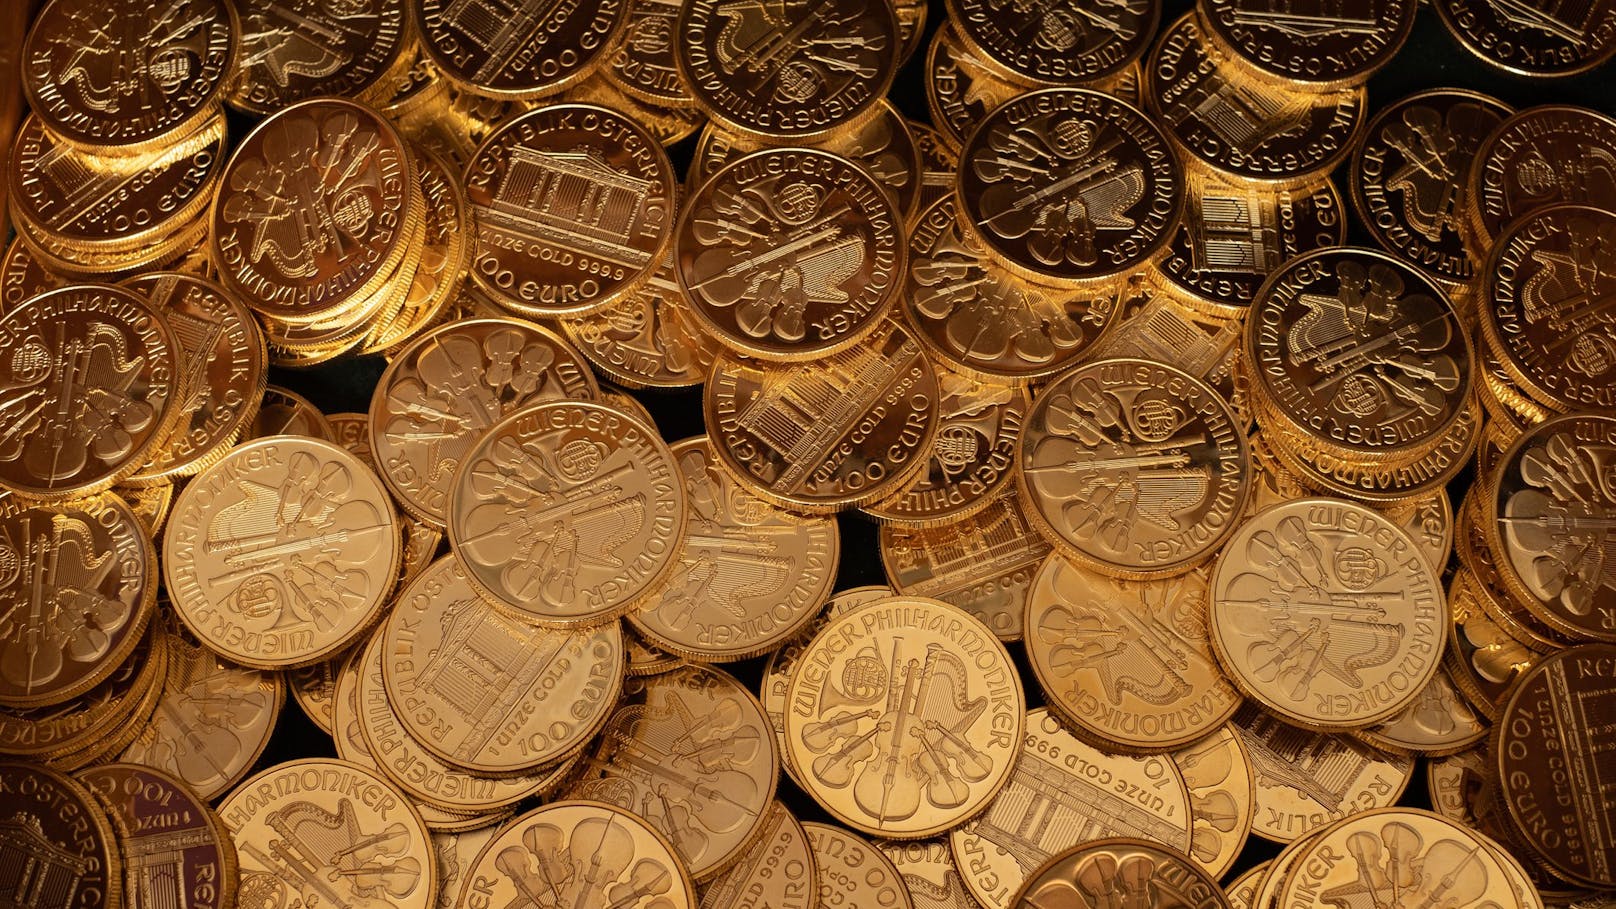 Goldmünzen aus Hasenstall geraubt: Vier Jahre Haft